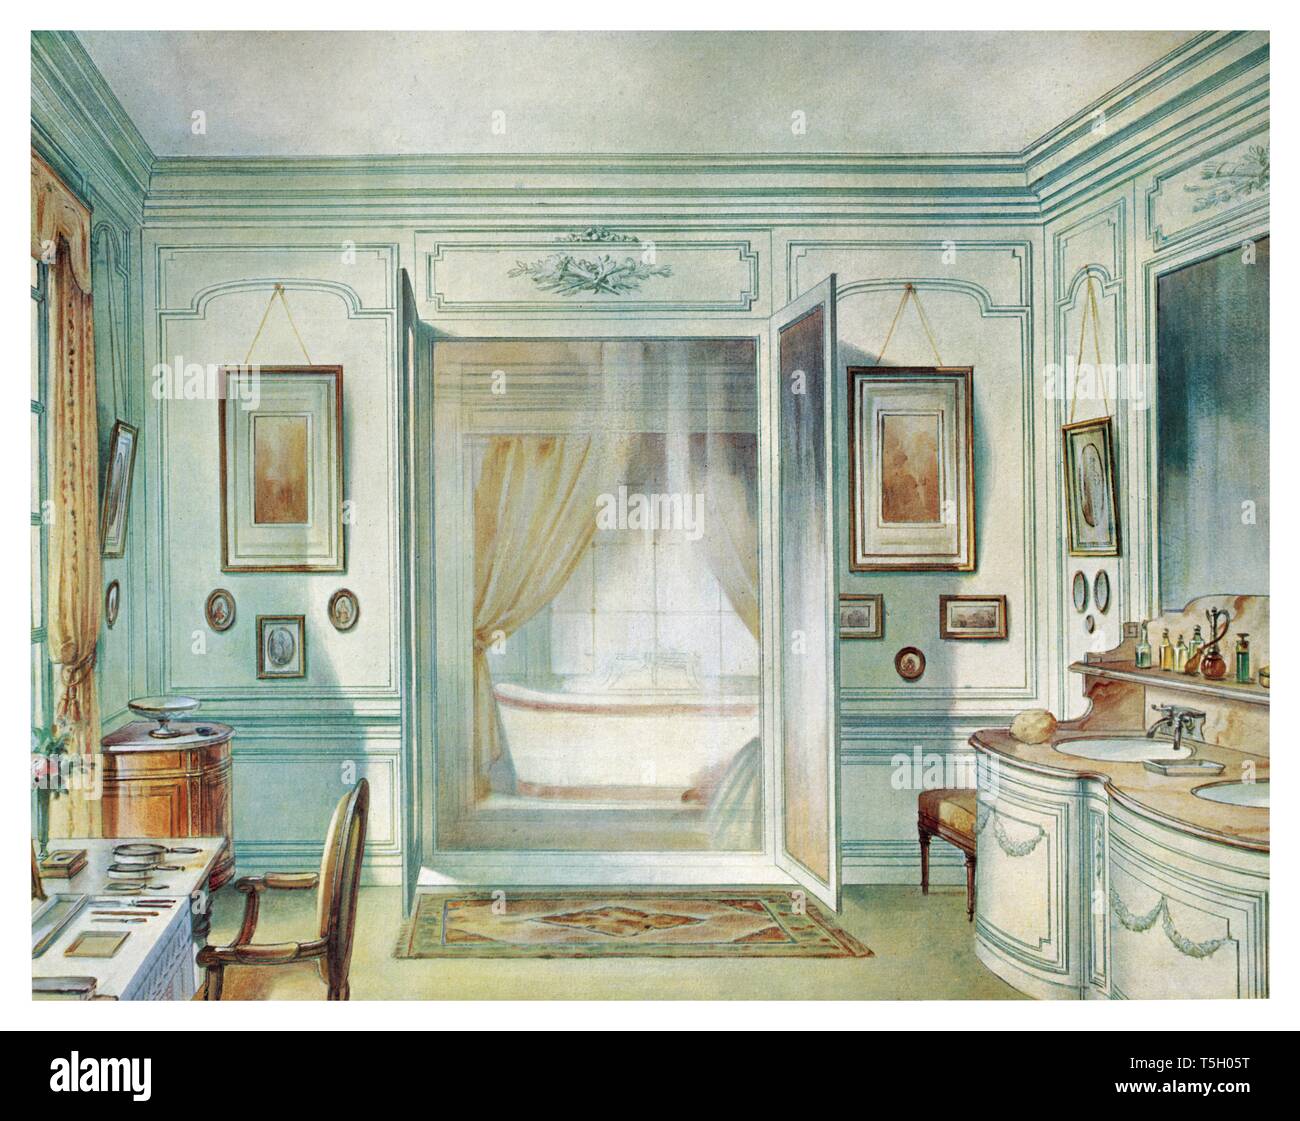 Badezimmer im Louis XVI-Stil, mit einem 3-seitigen Glas. Jahrgang Illustration von Interieur 1905 Stockfoto